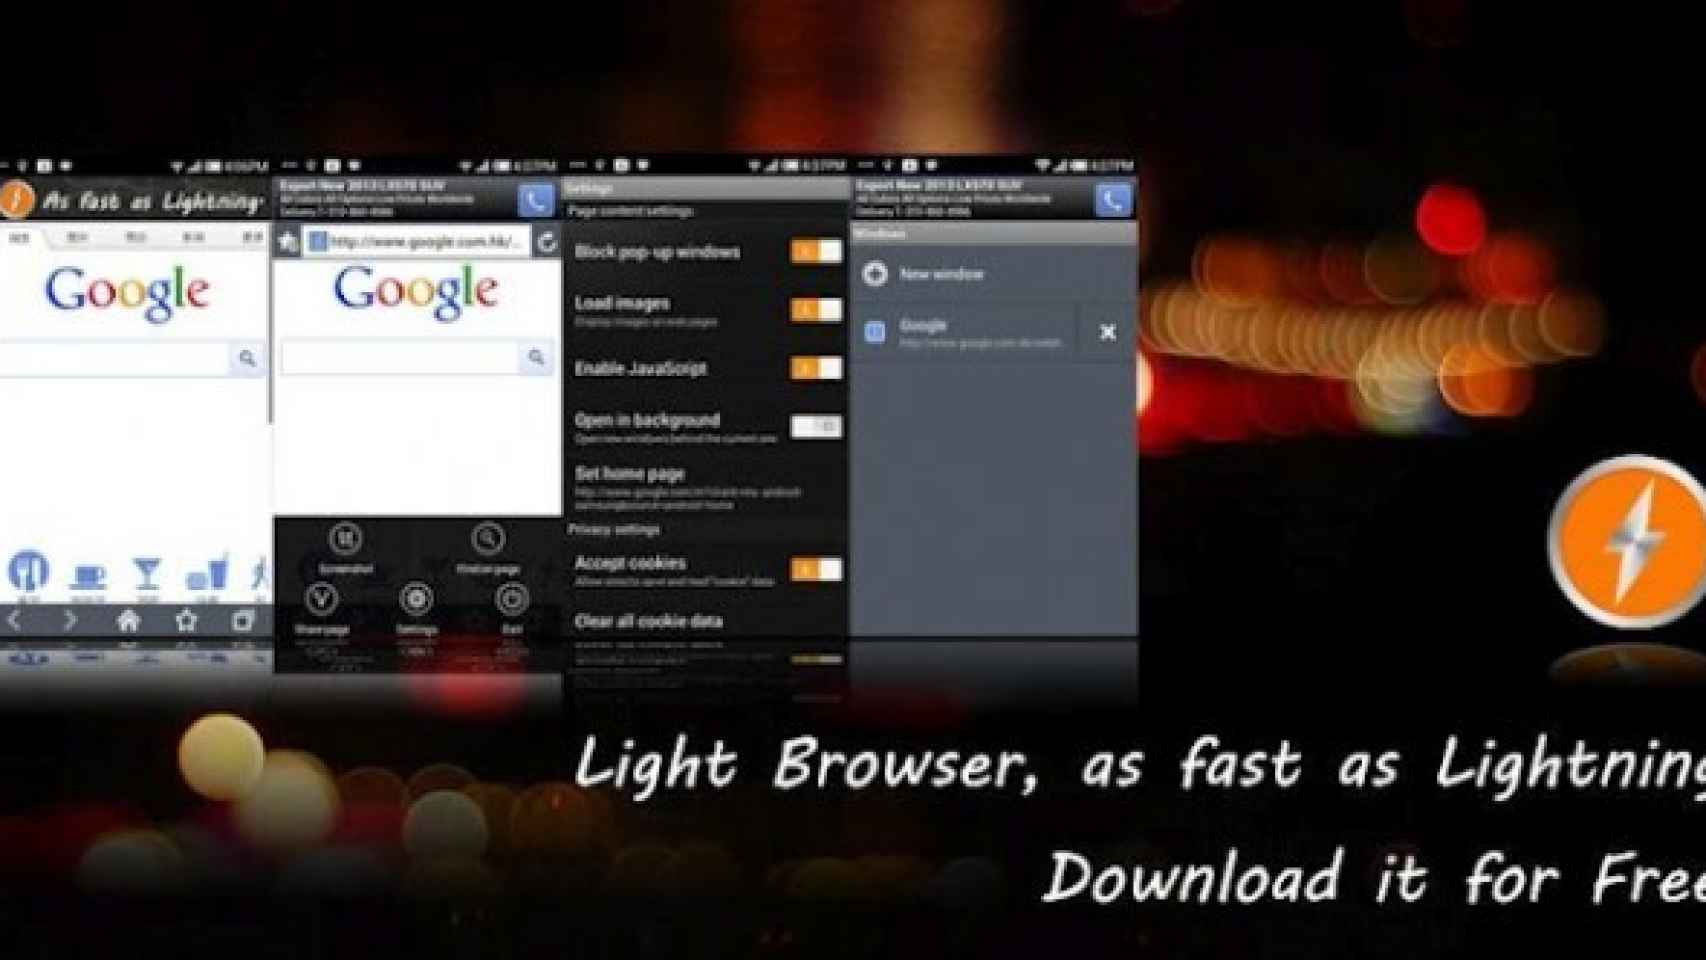 Un navegador rápido, ligero y sencillo: Browser Light